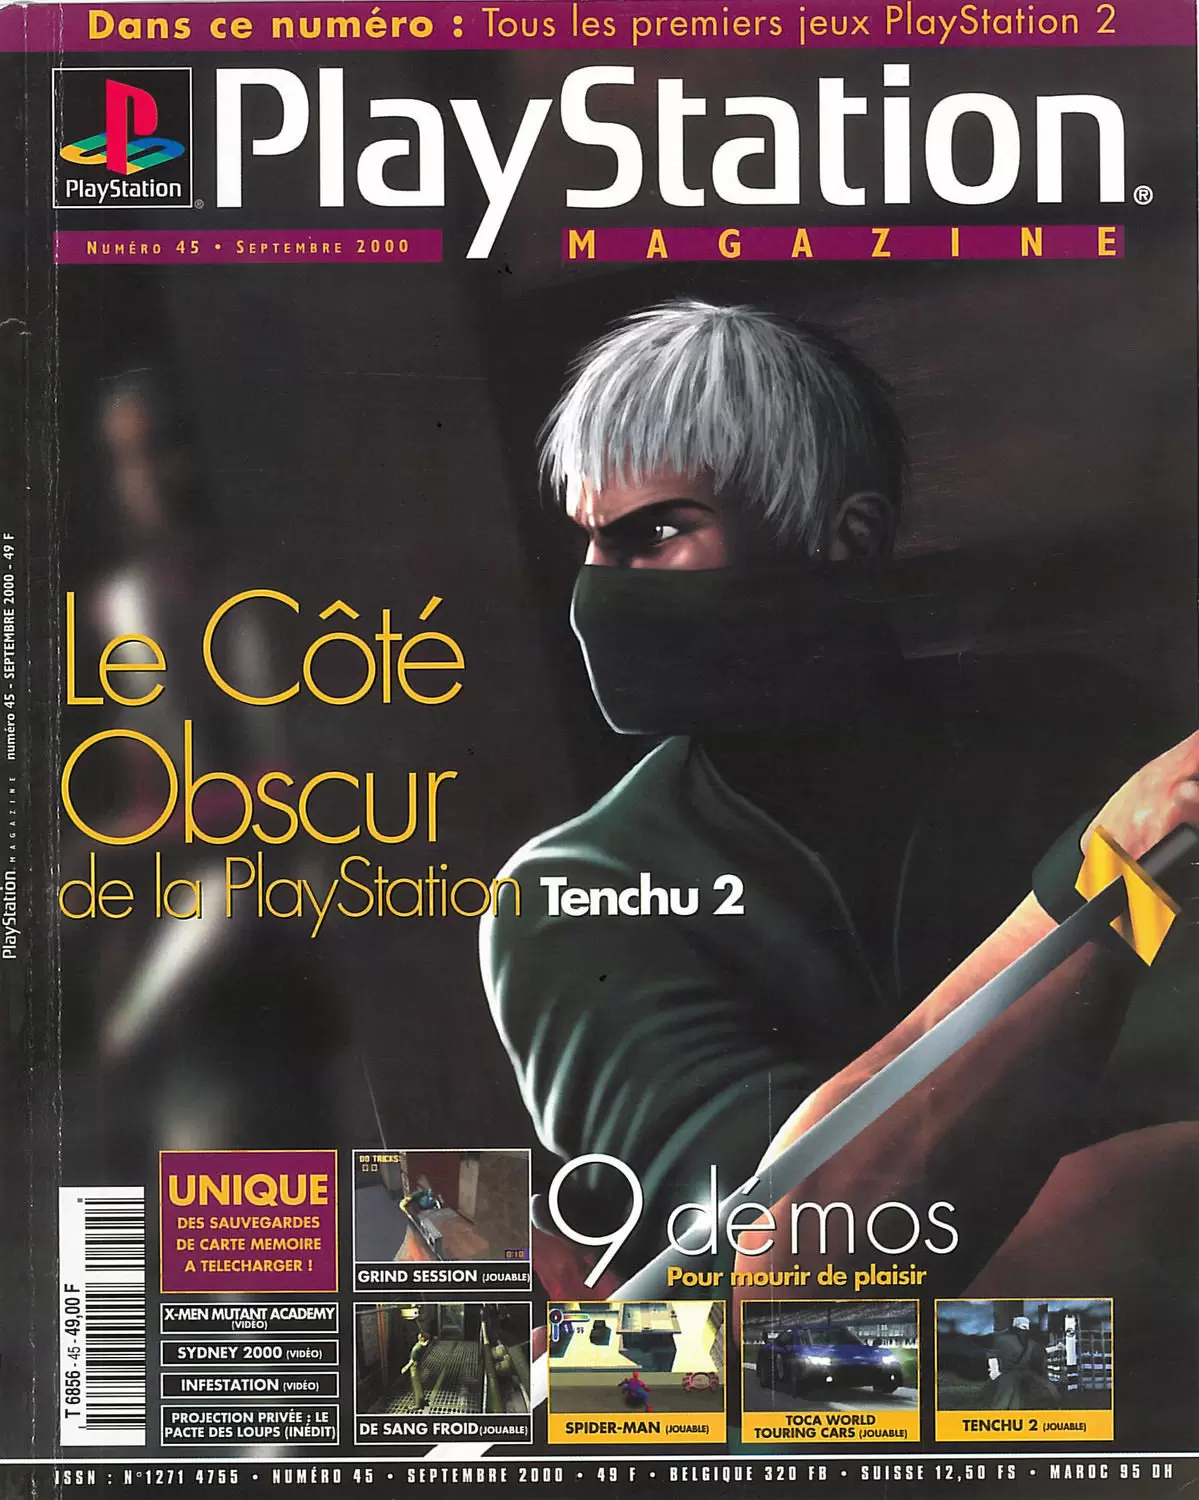 Playstation Magazine - Playstation Magazine #45